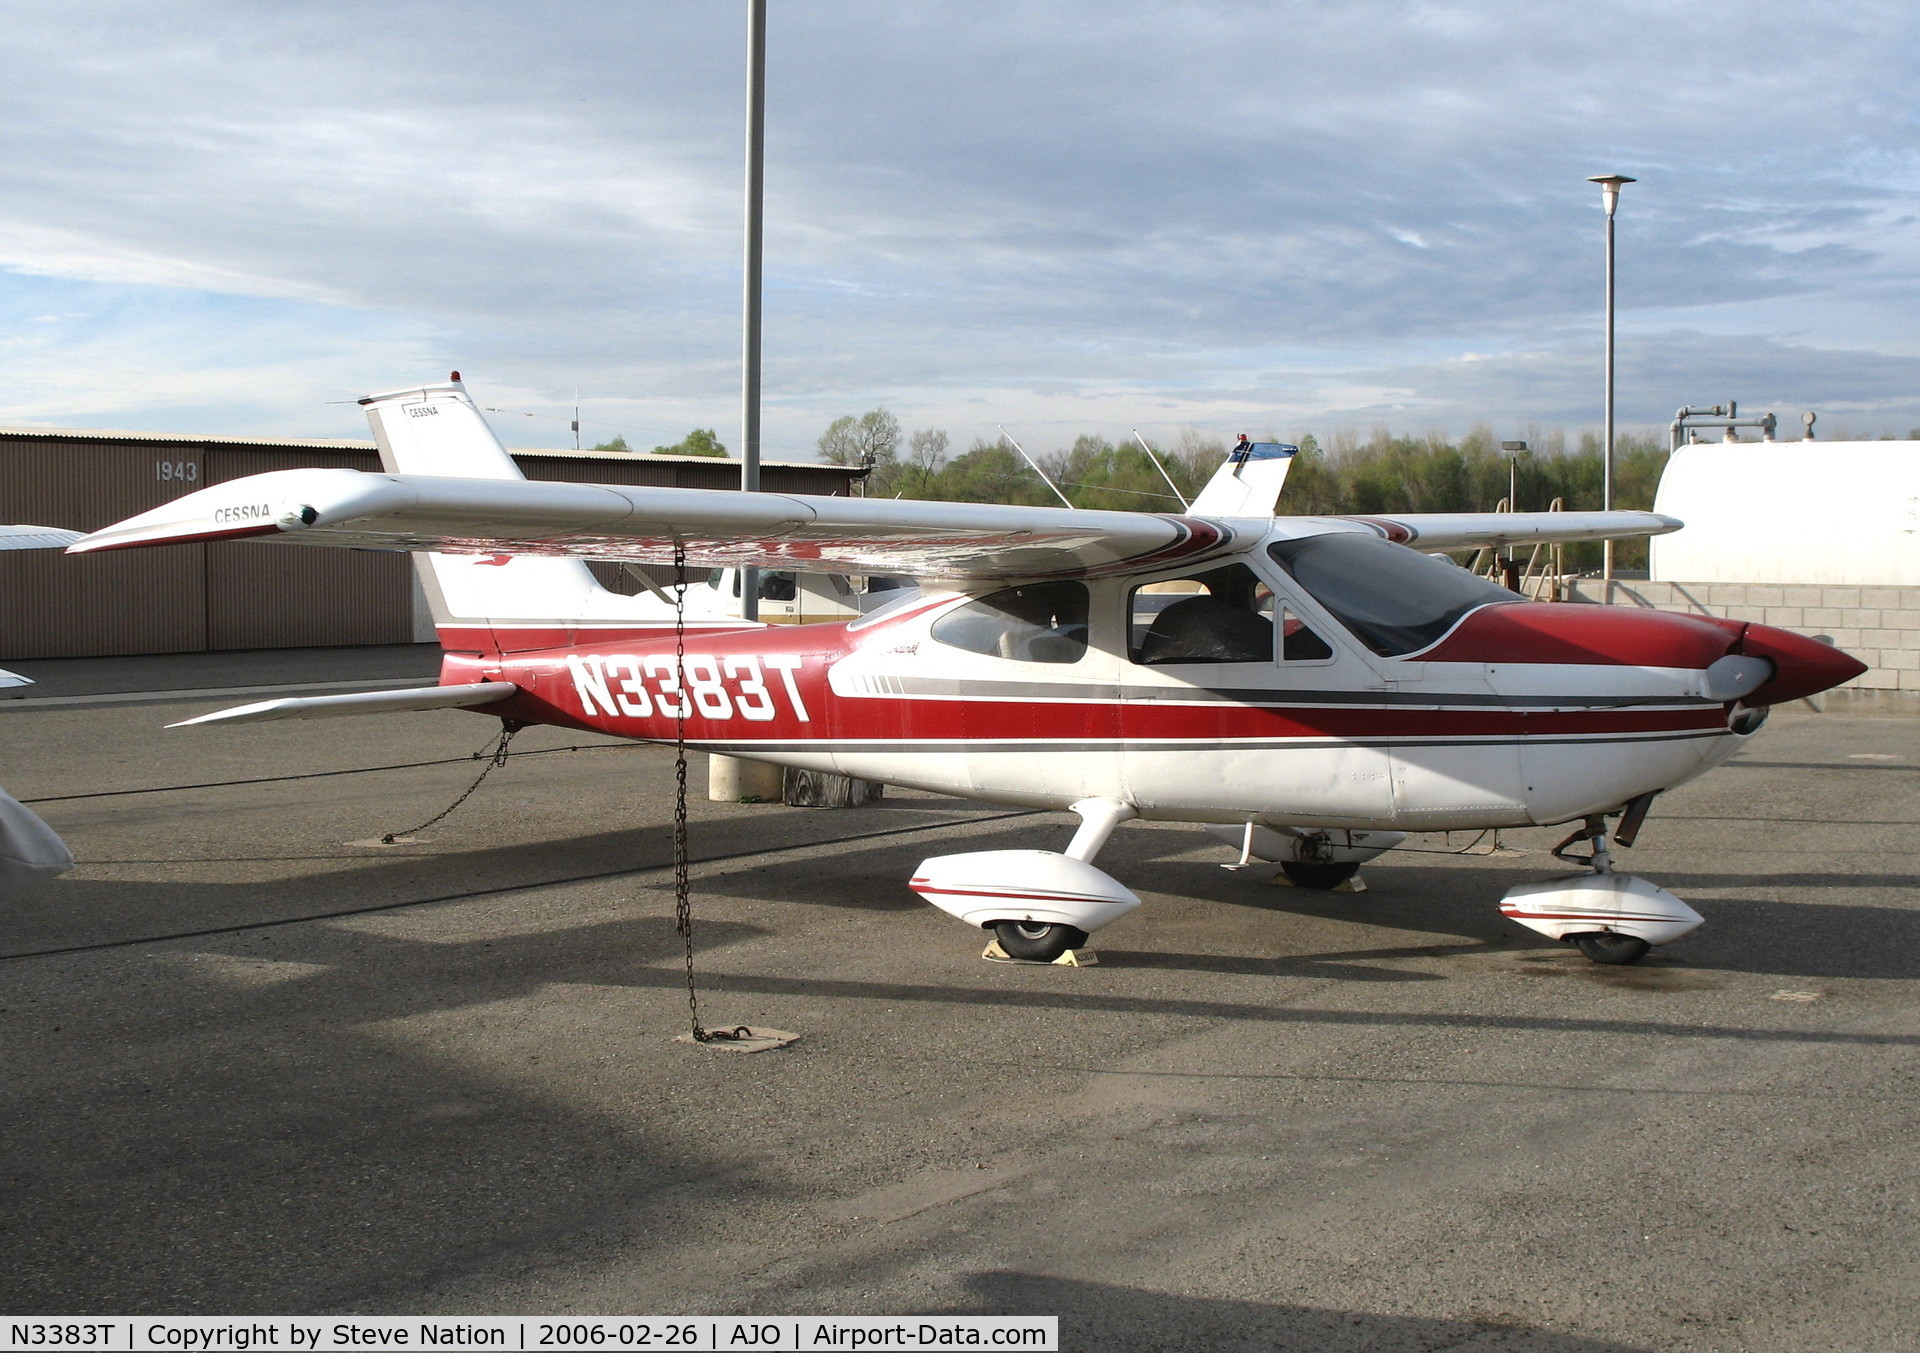 N3383T, 1967 Cessna 177 Cardinal C/N 17700683, 1967 Cessna 177 @ Corona Municipal Airport, CA